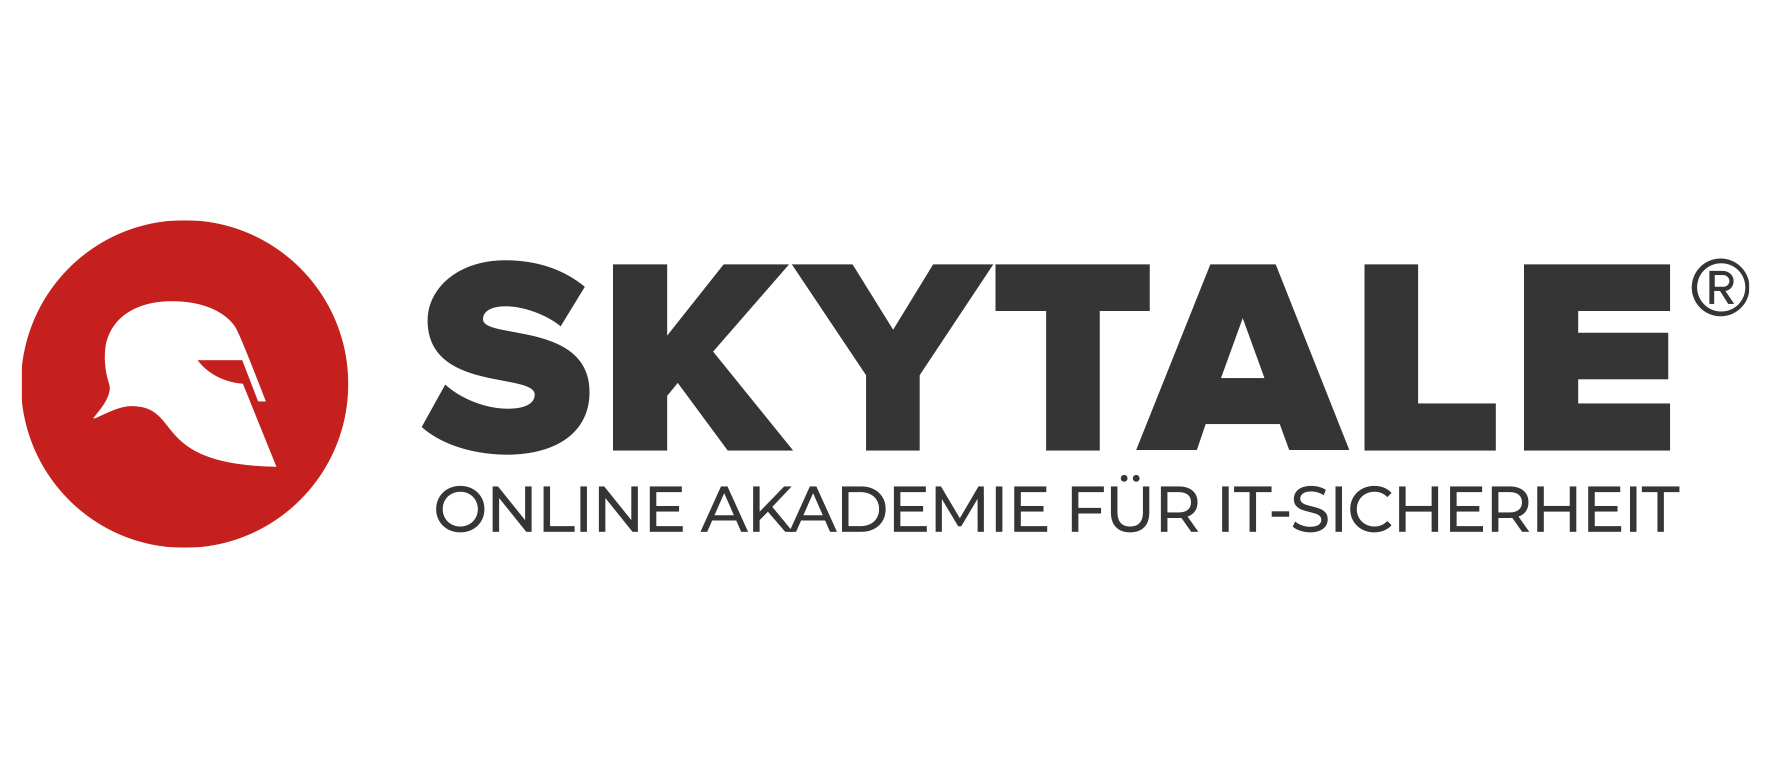 SKYTALE | Online Akademie für IT-Sicherheit Logo